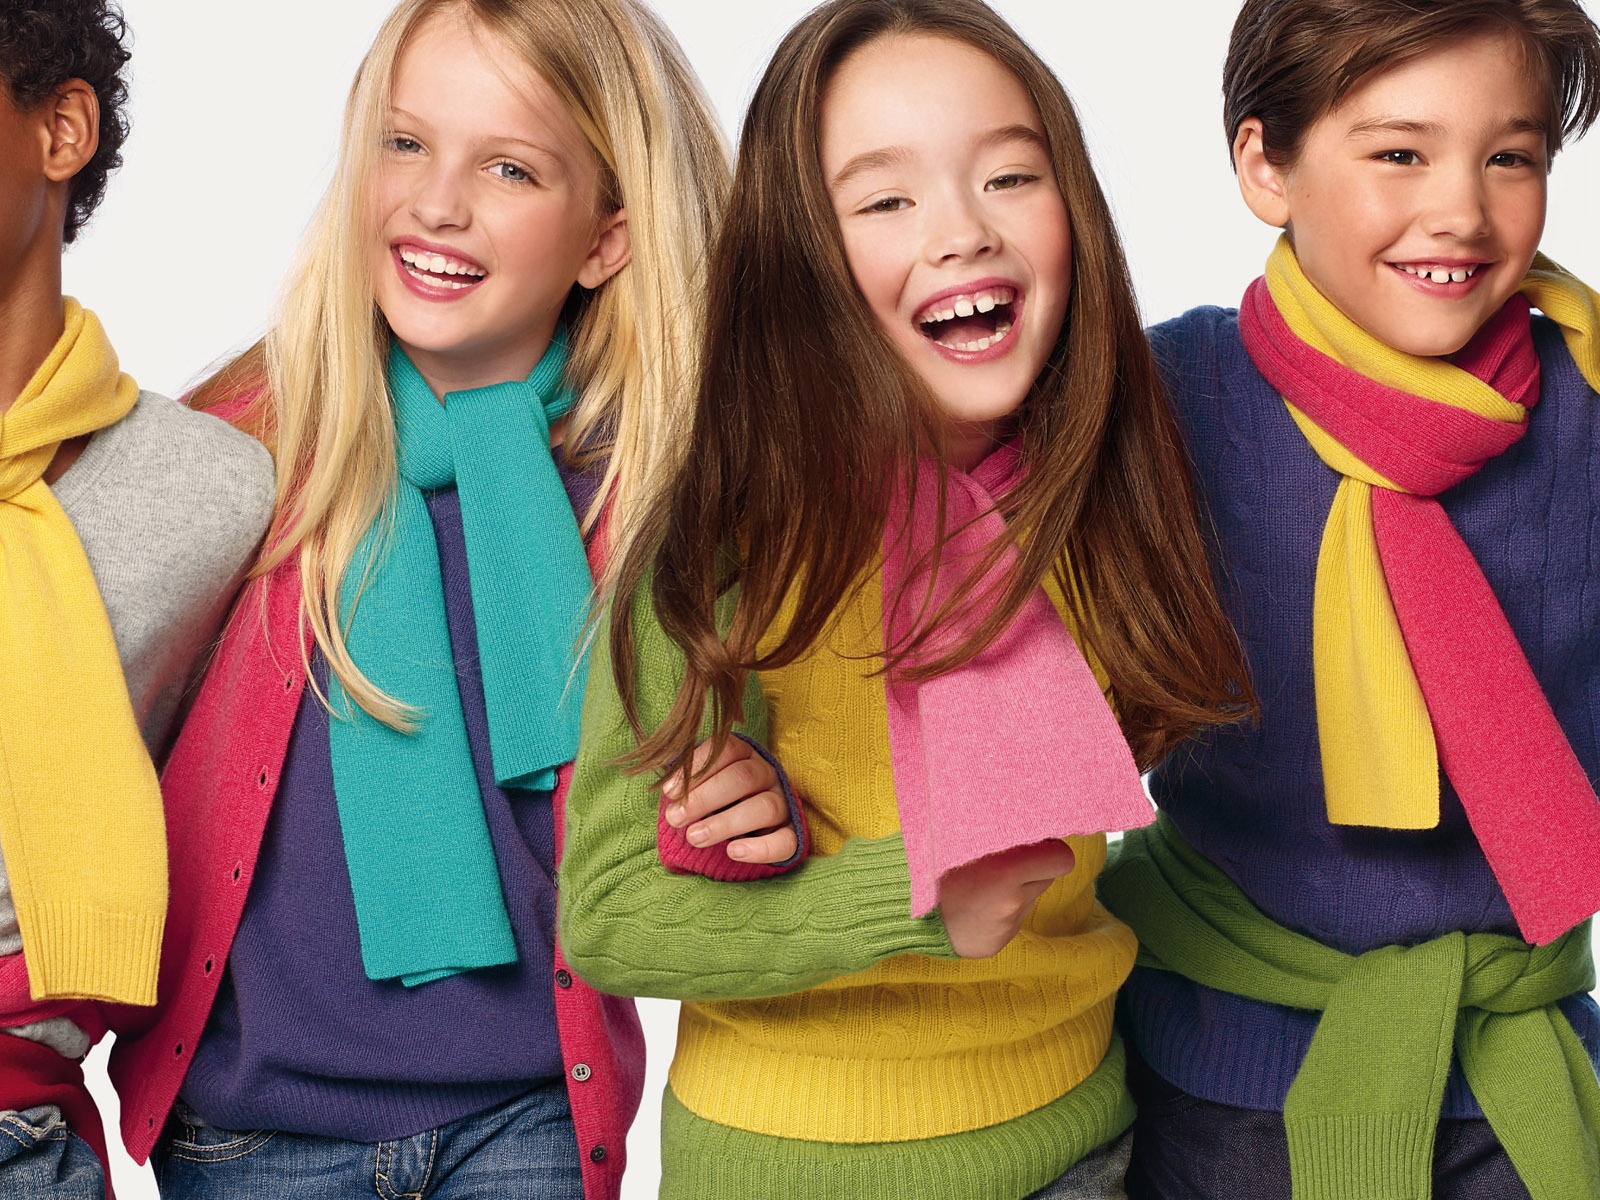 Los niños de colores de moda de papel tapiz (1) #20 - 1600x1200